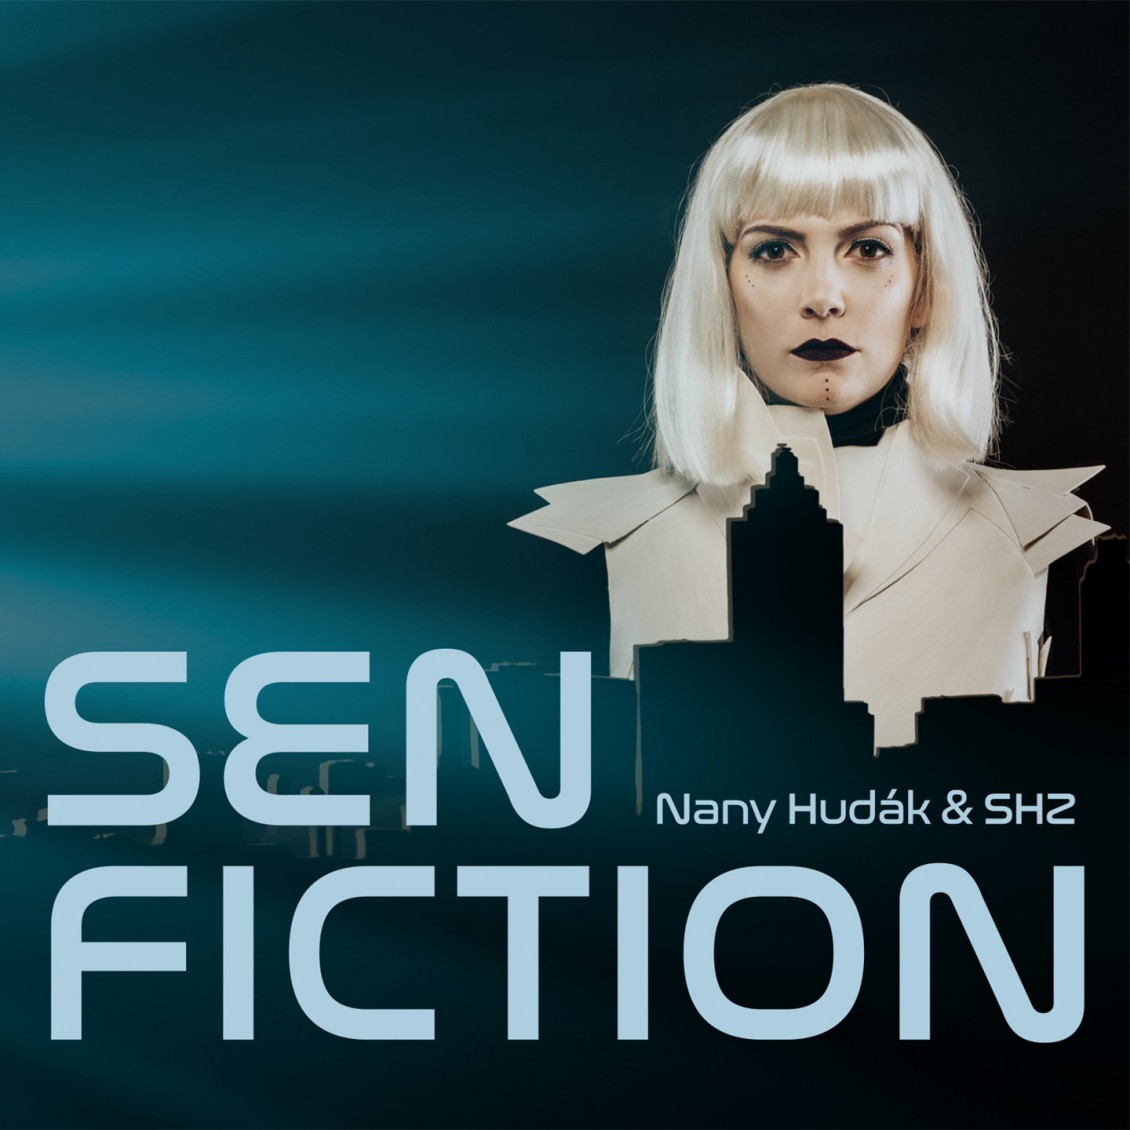 Nany Hudák & SHZ, Sen Fiction, CD